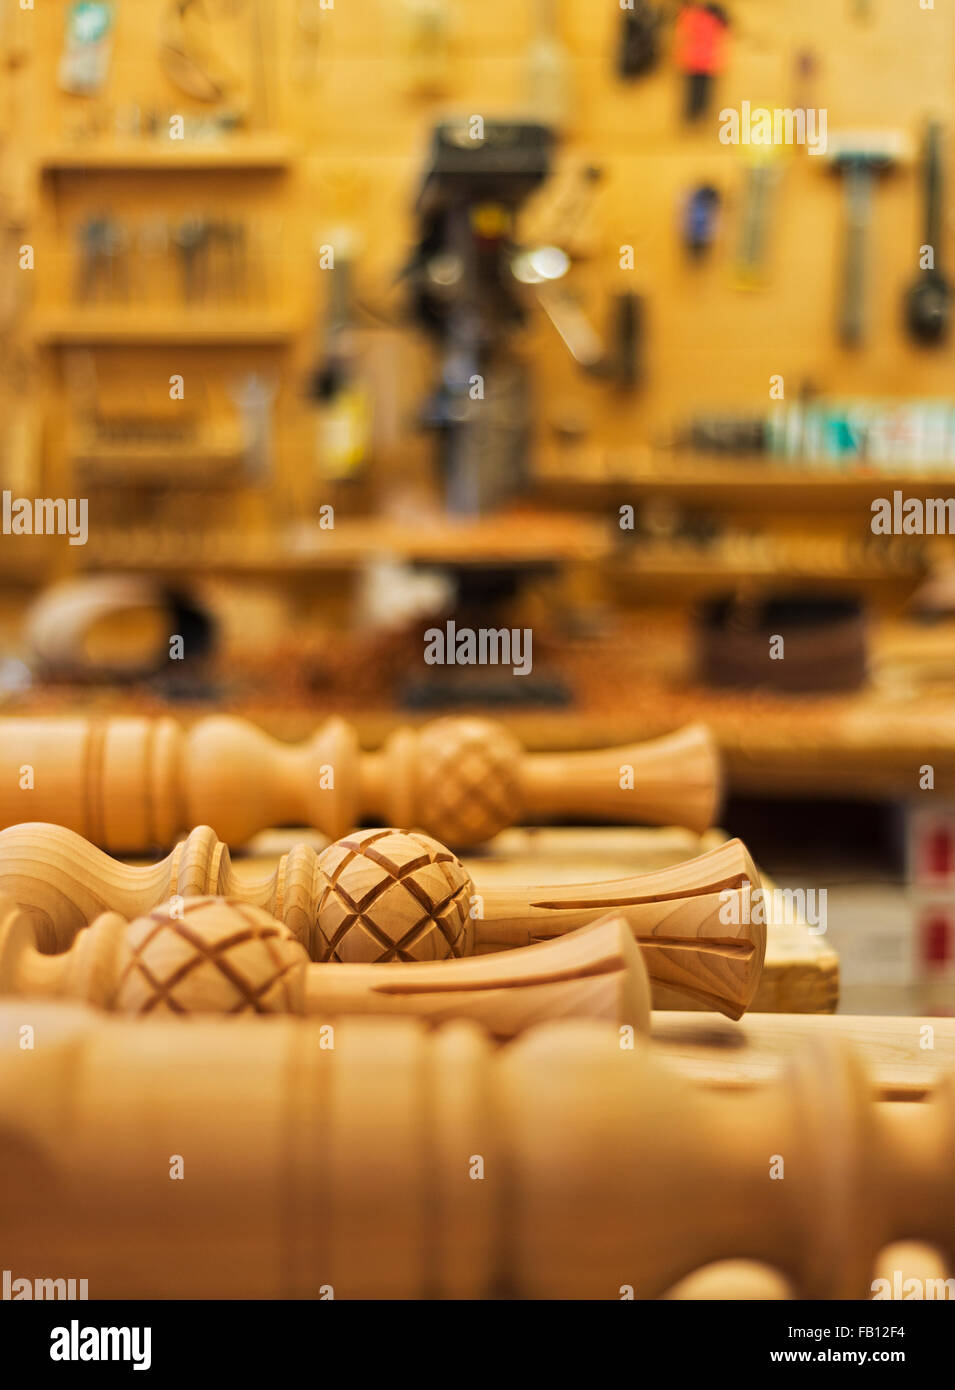 Holzteile Stockfotos und -bilder Kaufen - Alamy